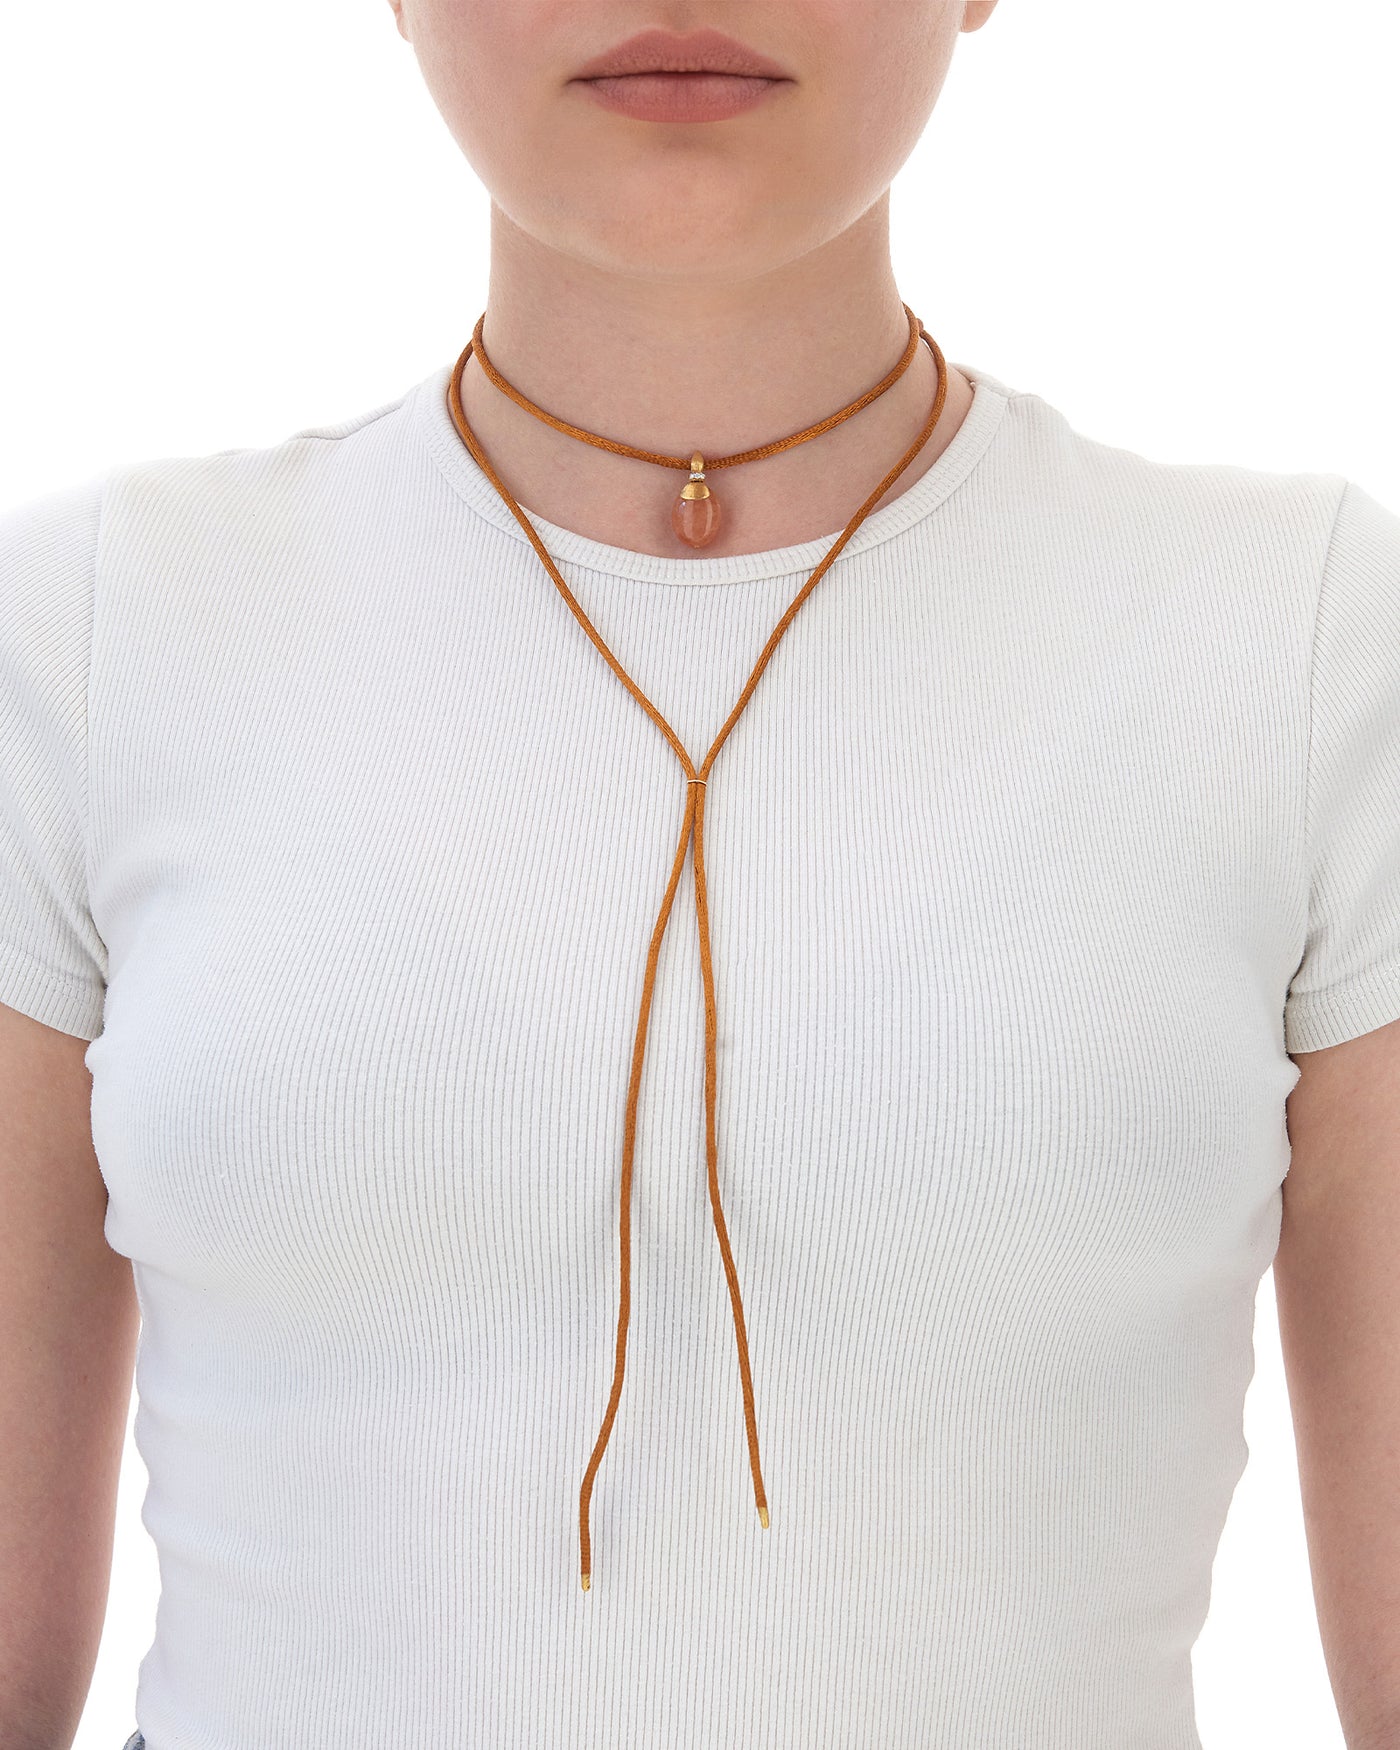 "petra" gold, diamonds and orange aventurine pendant (medium) 